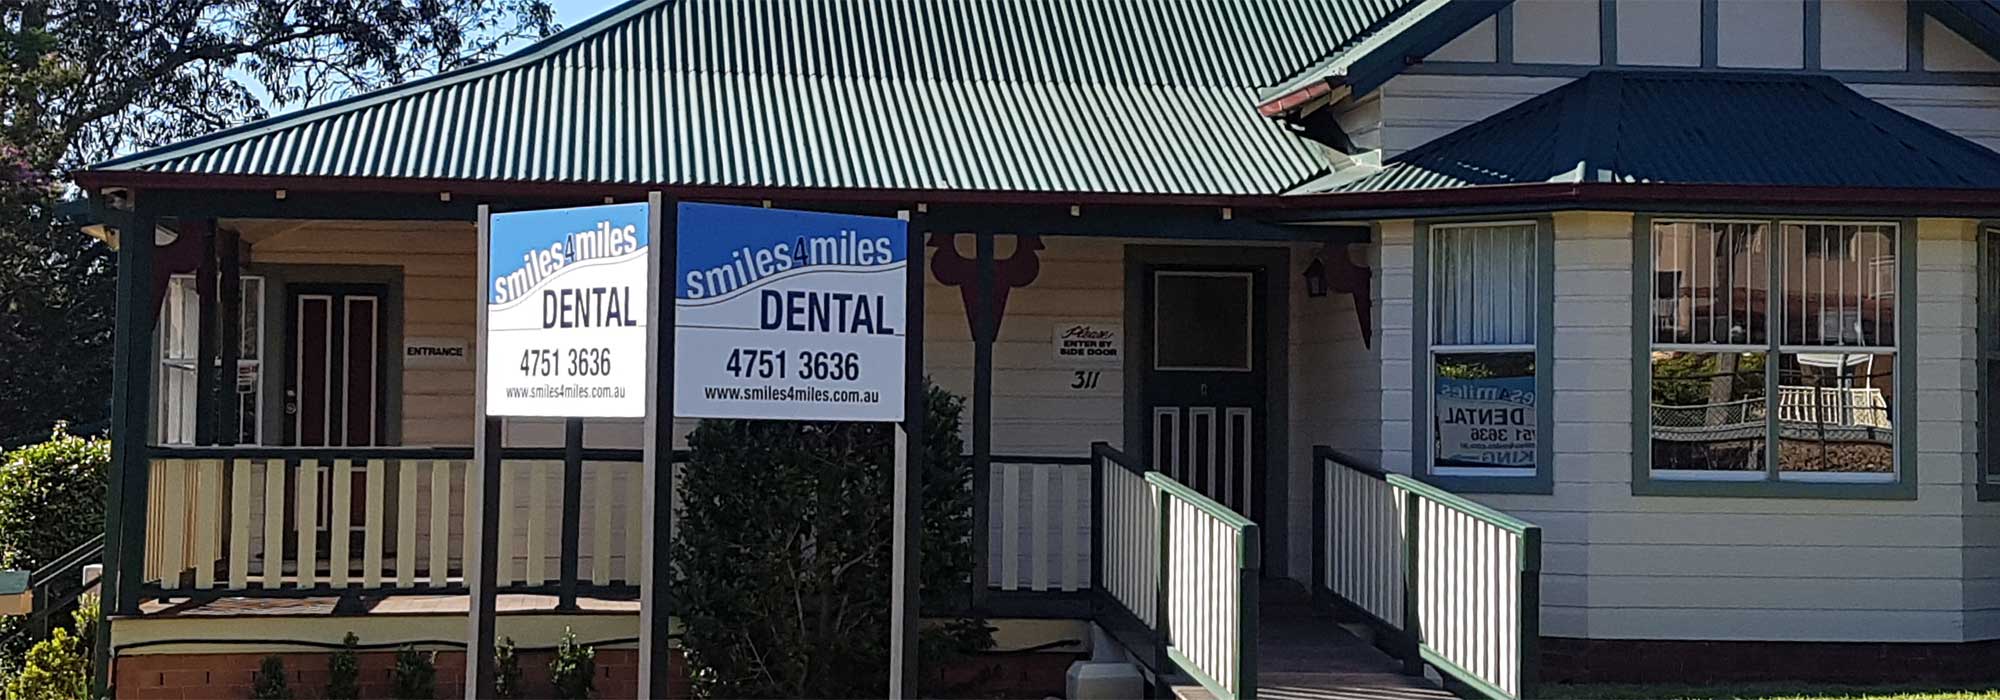 smiles 4 miles dental